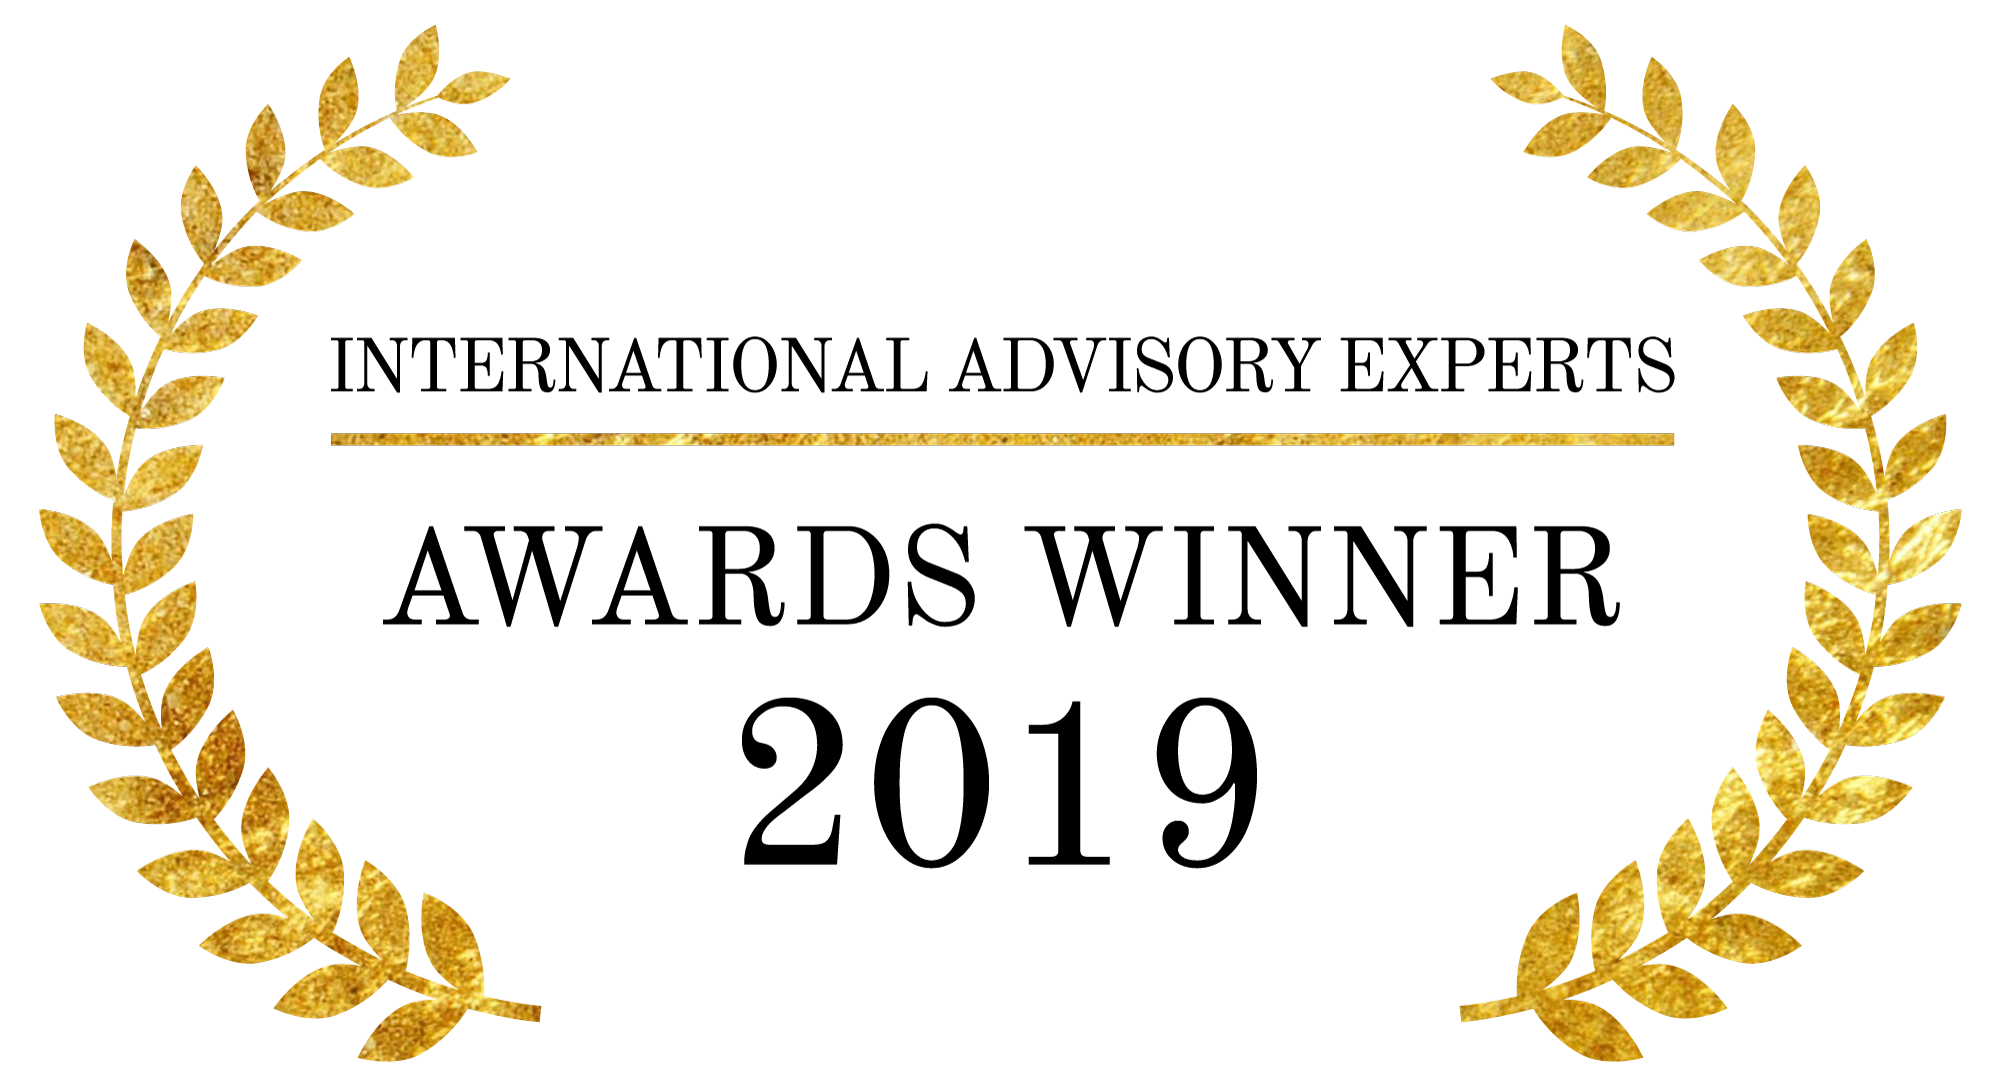 IAE Award Logo 2019